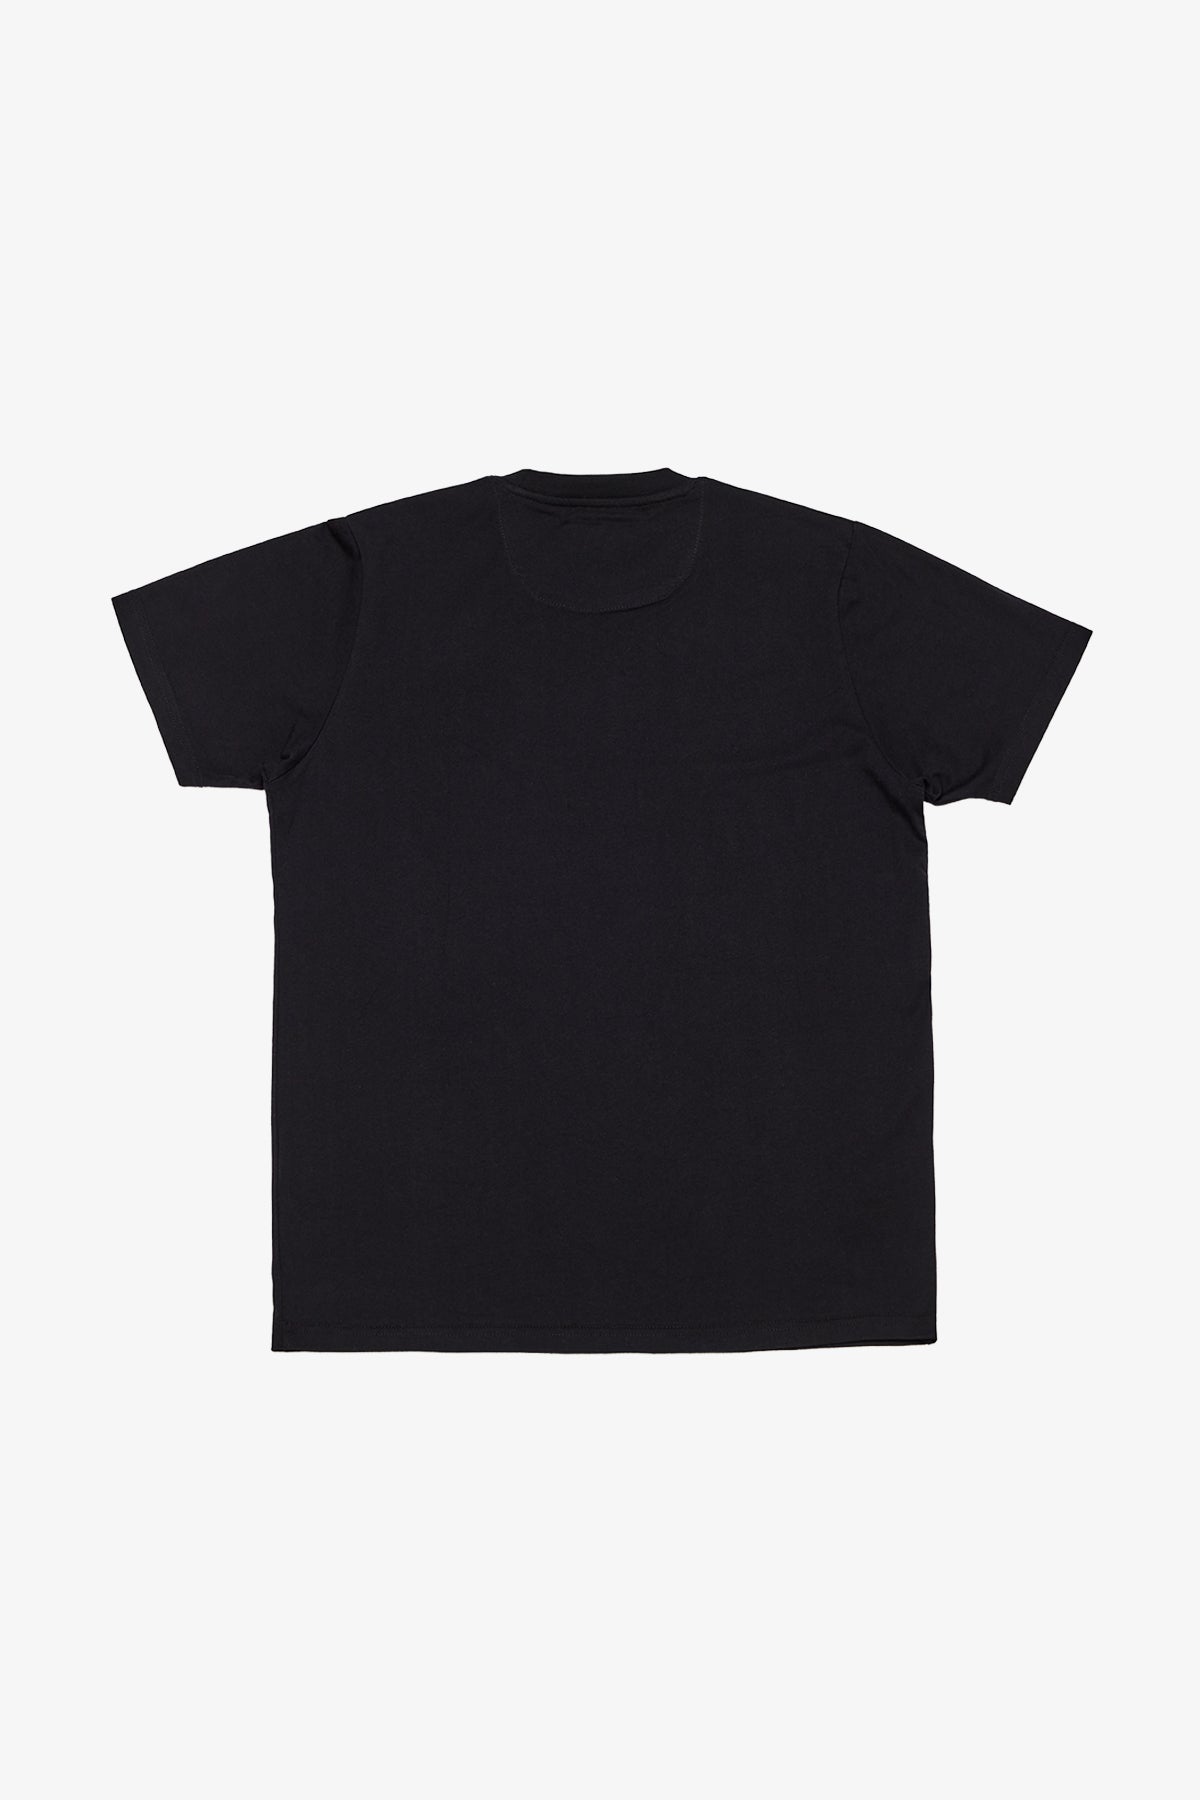 Edan - Black T-shirt